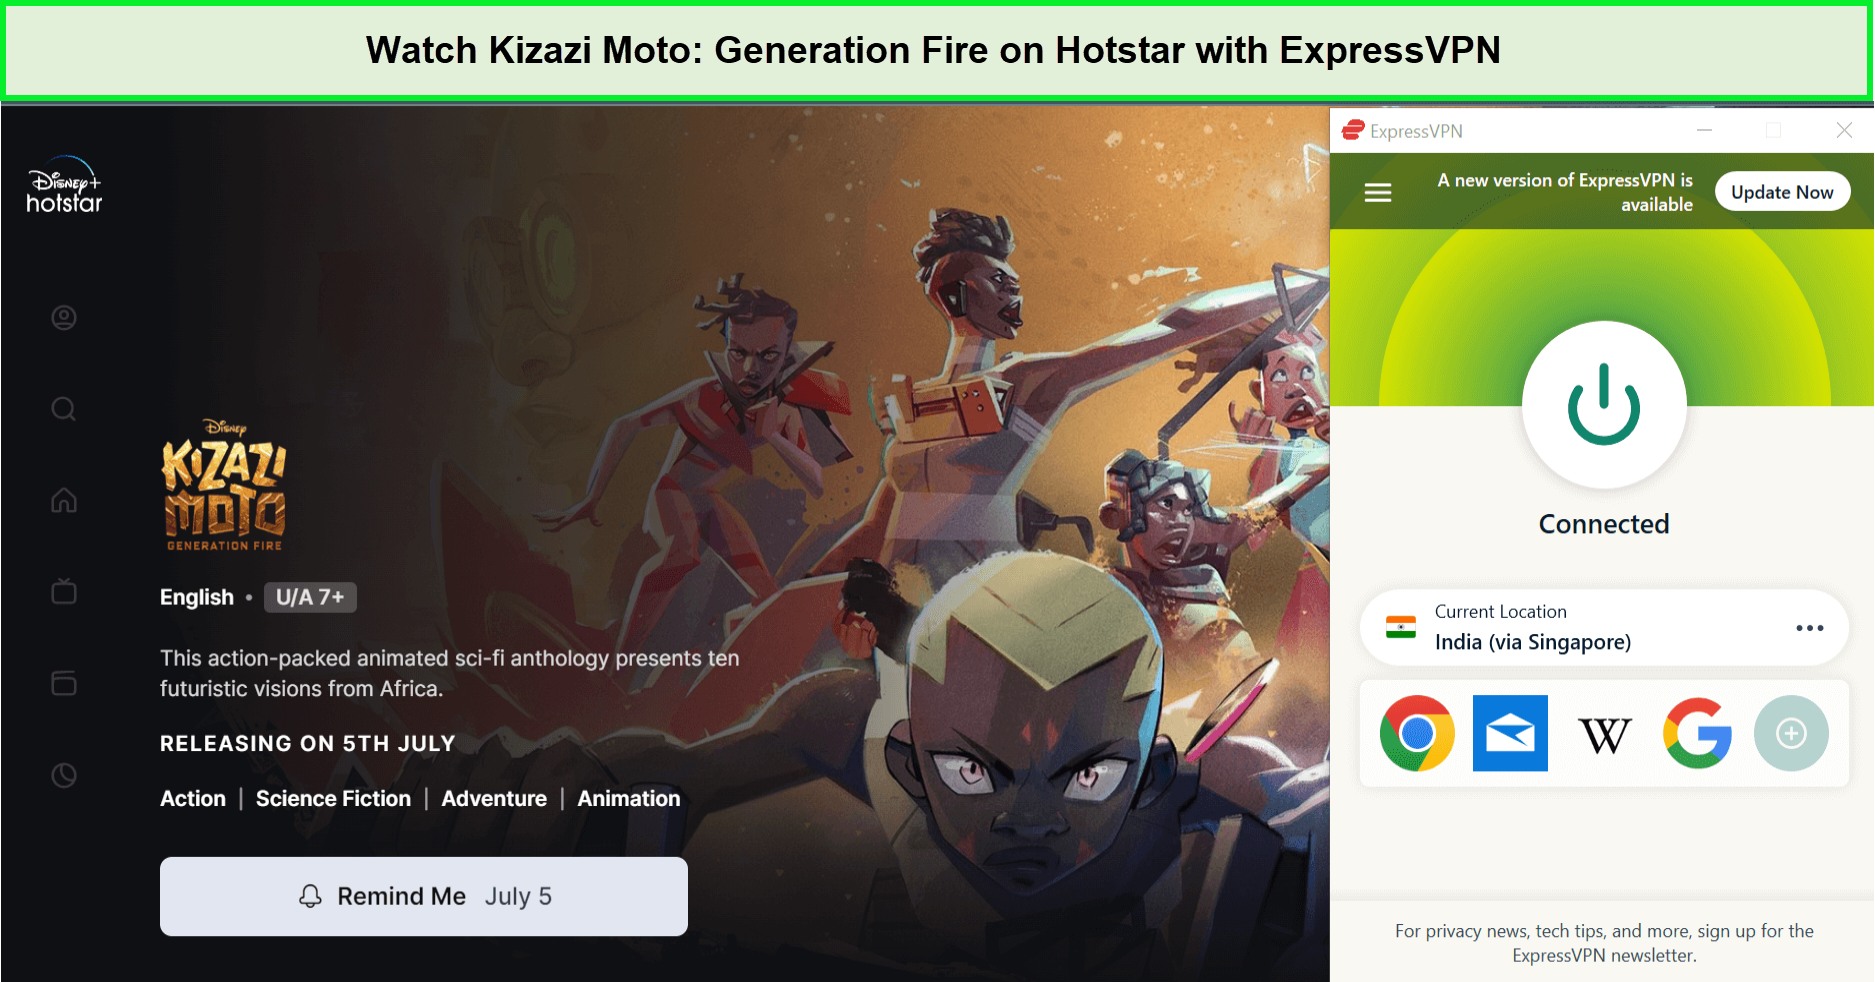 Watch-Kizazi-Moto-Generation-Fire-in-Spain-on-Hotstar-with-ExpressVPN